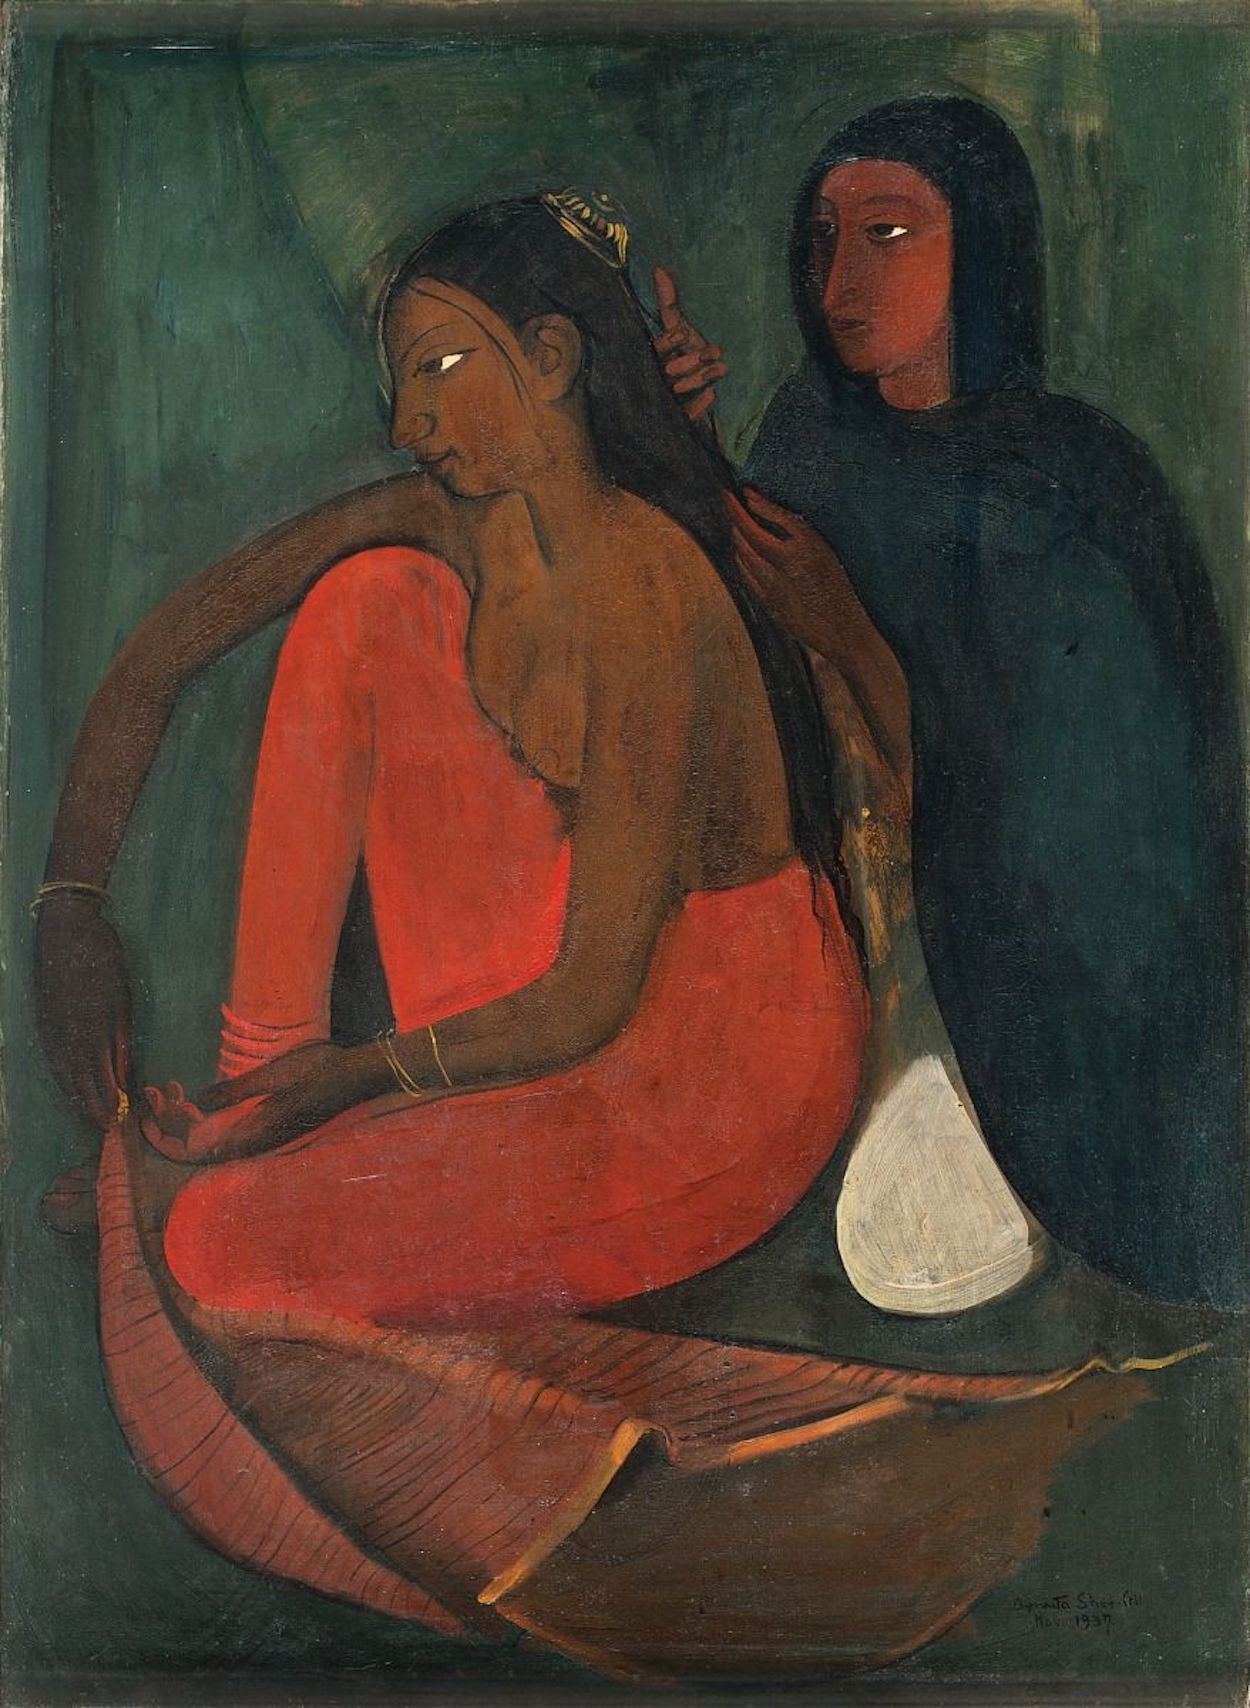 花嫁の支度 by Amrita Sher-Gil - 1937年 - 95.2 x 70.4 cm 